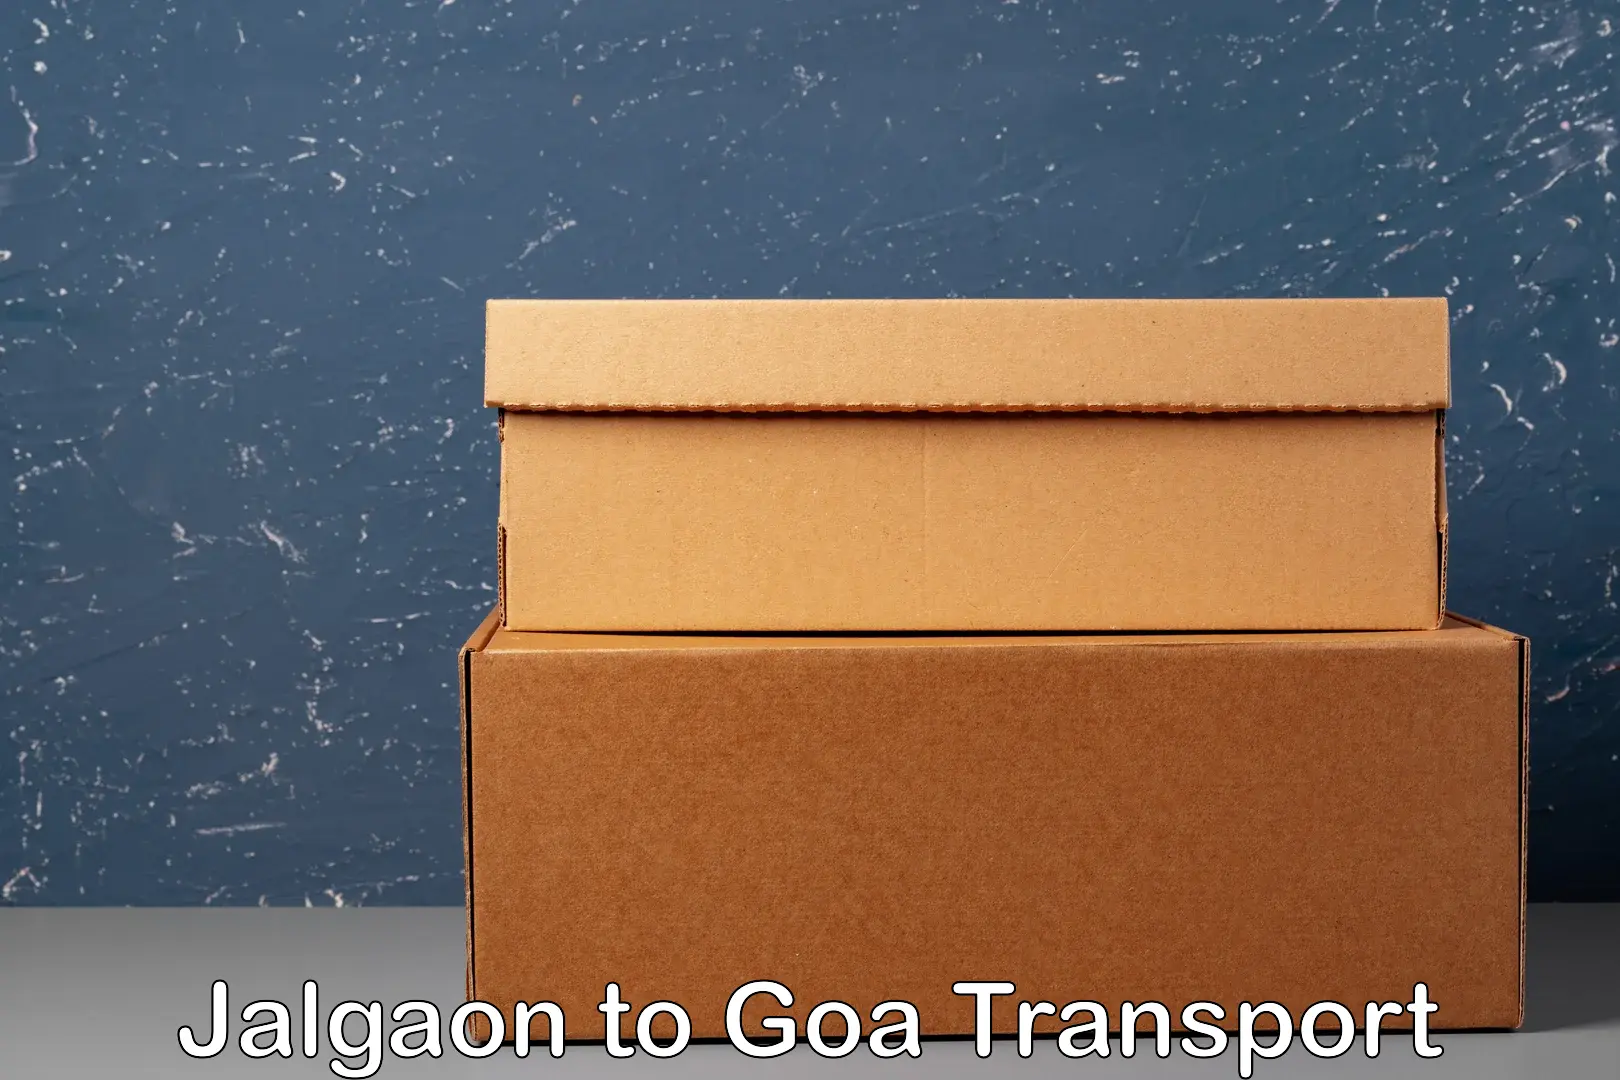 Pick up transport service Jalgaon to Goa University